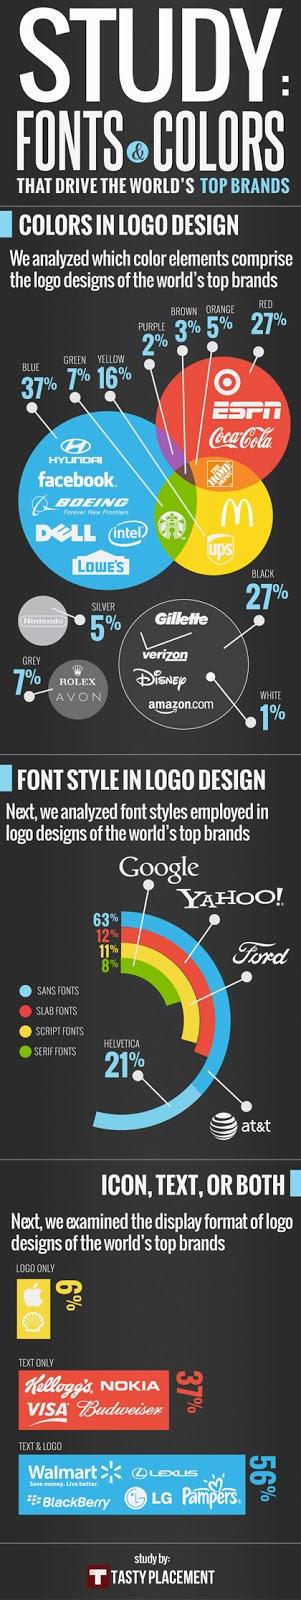 Utilisez les stats pour concevoir votre logo